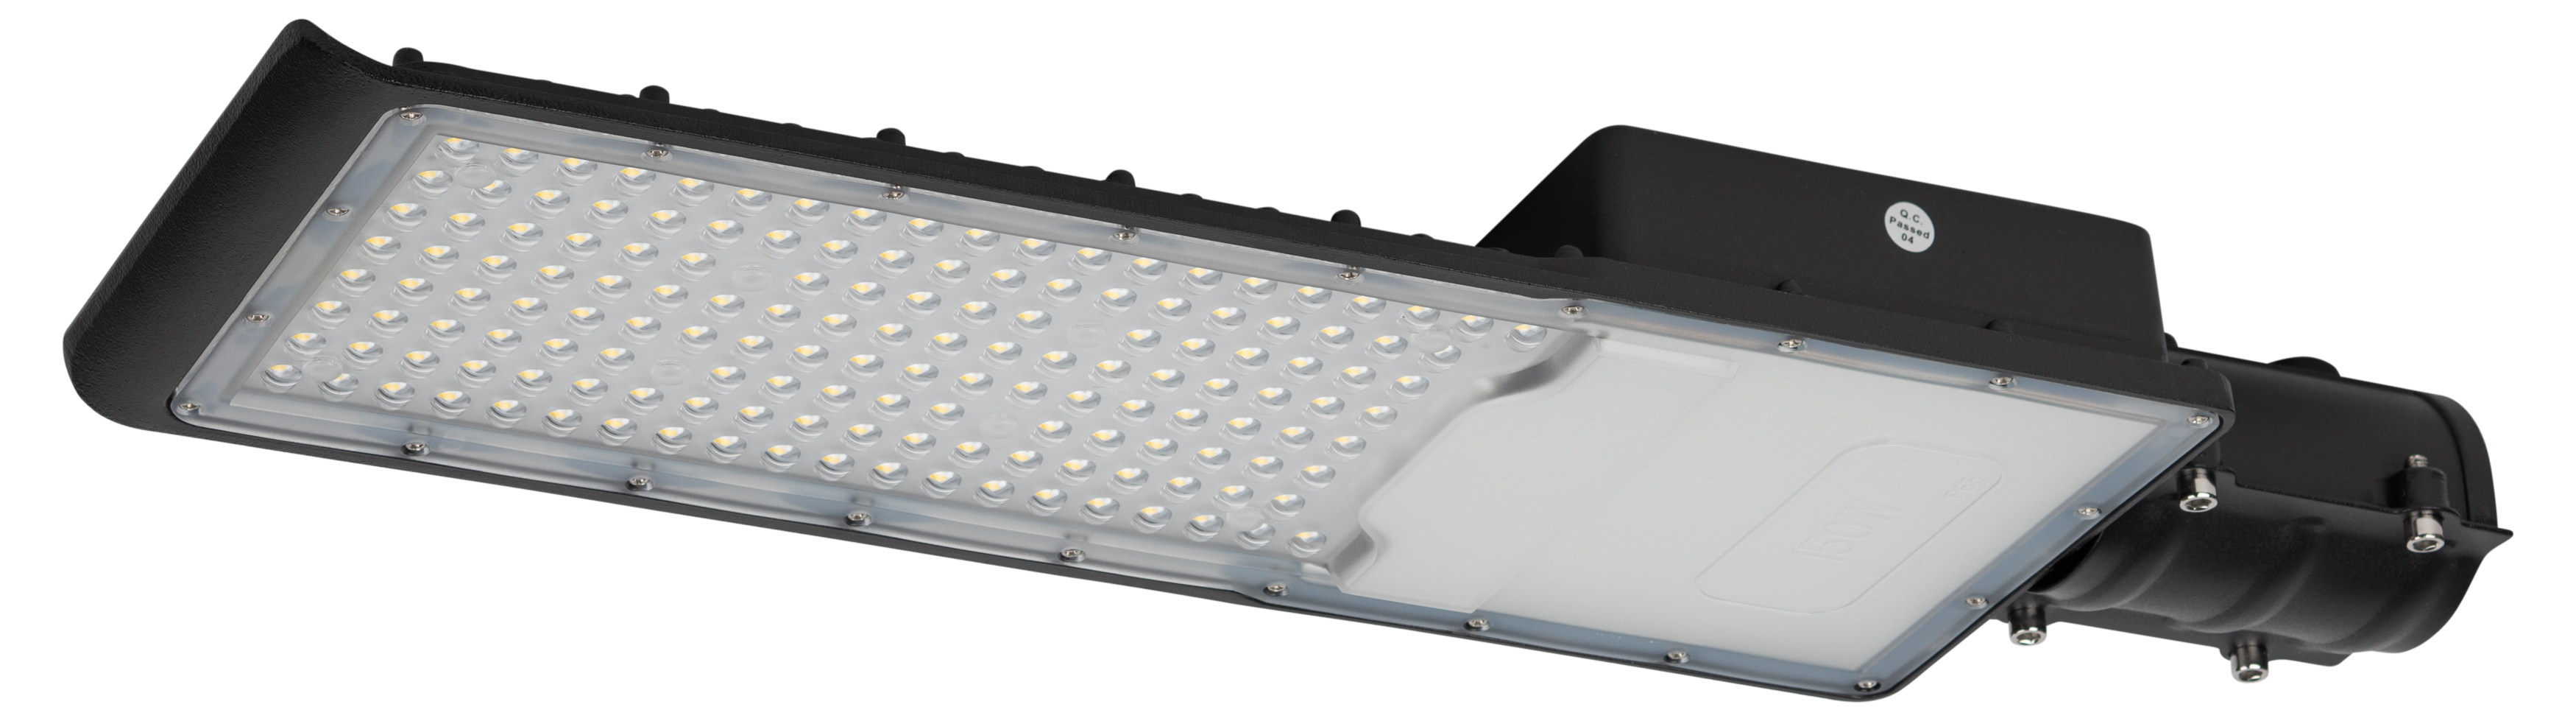 Уличный светильник ЭРА SPP-502-0-50K-150 консольный 150Вт 5000K 15750Лм IP65 полный раструб